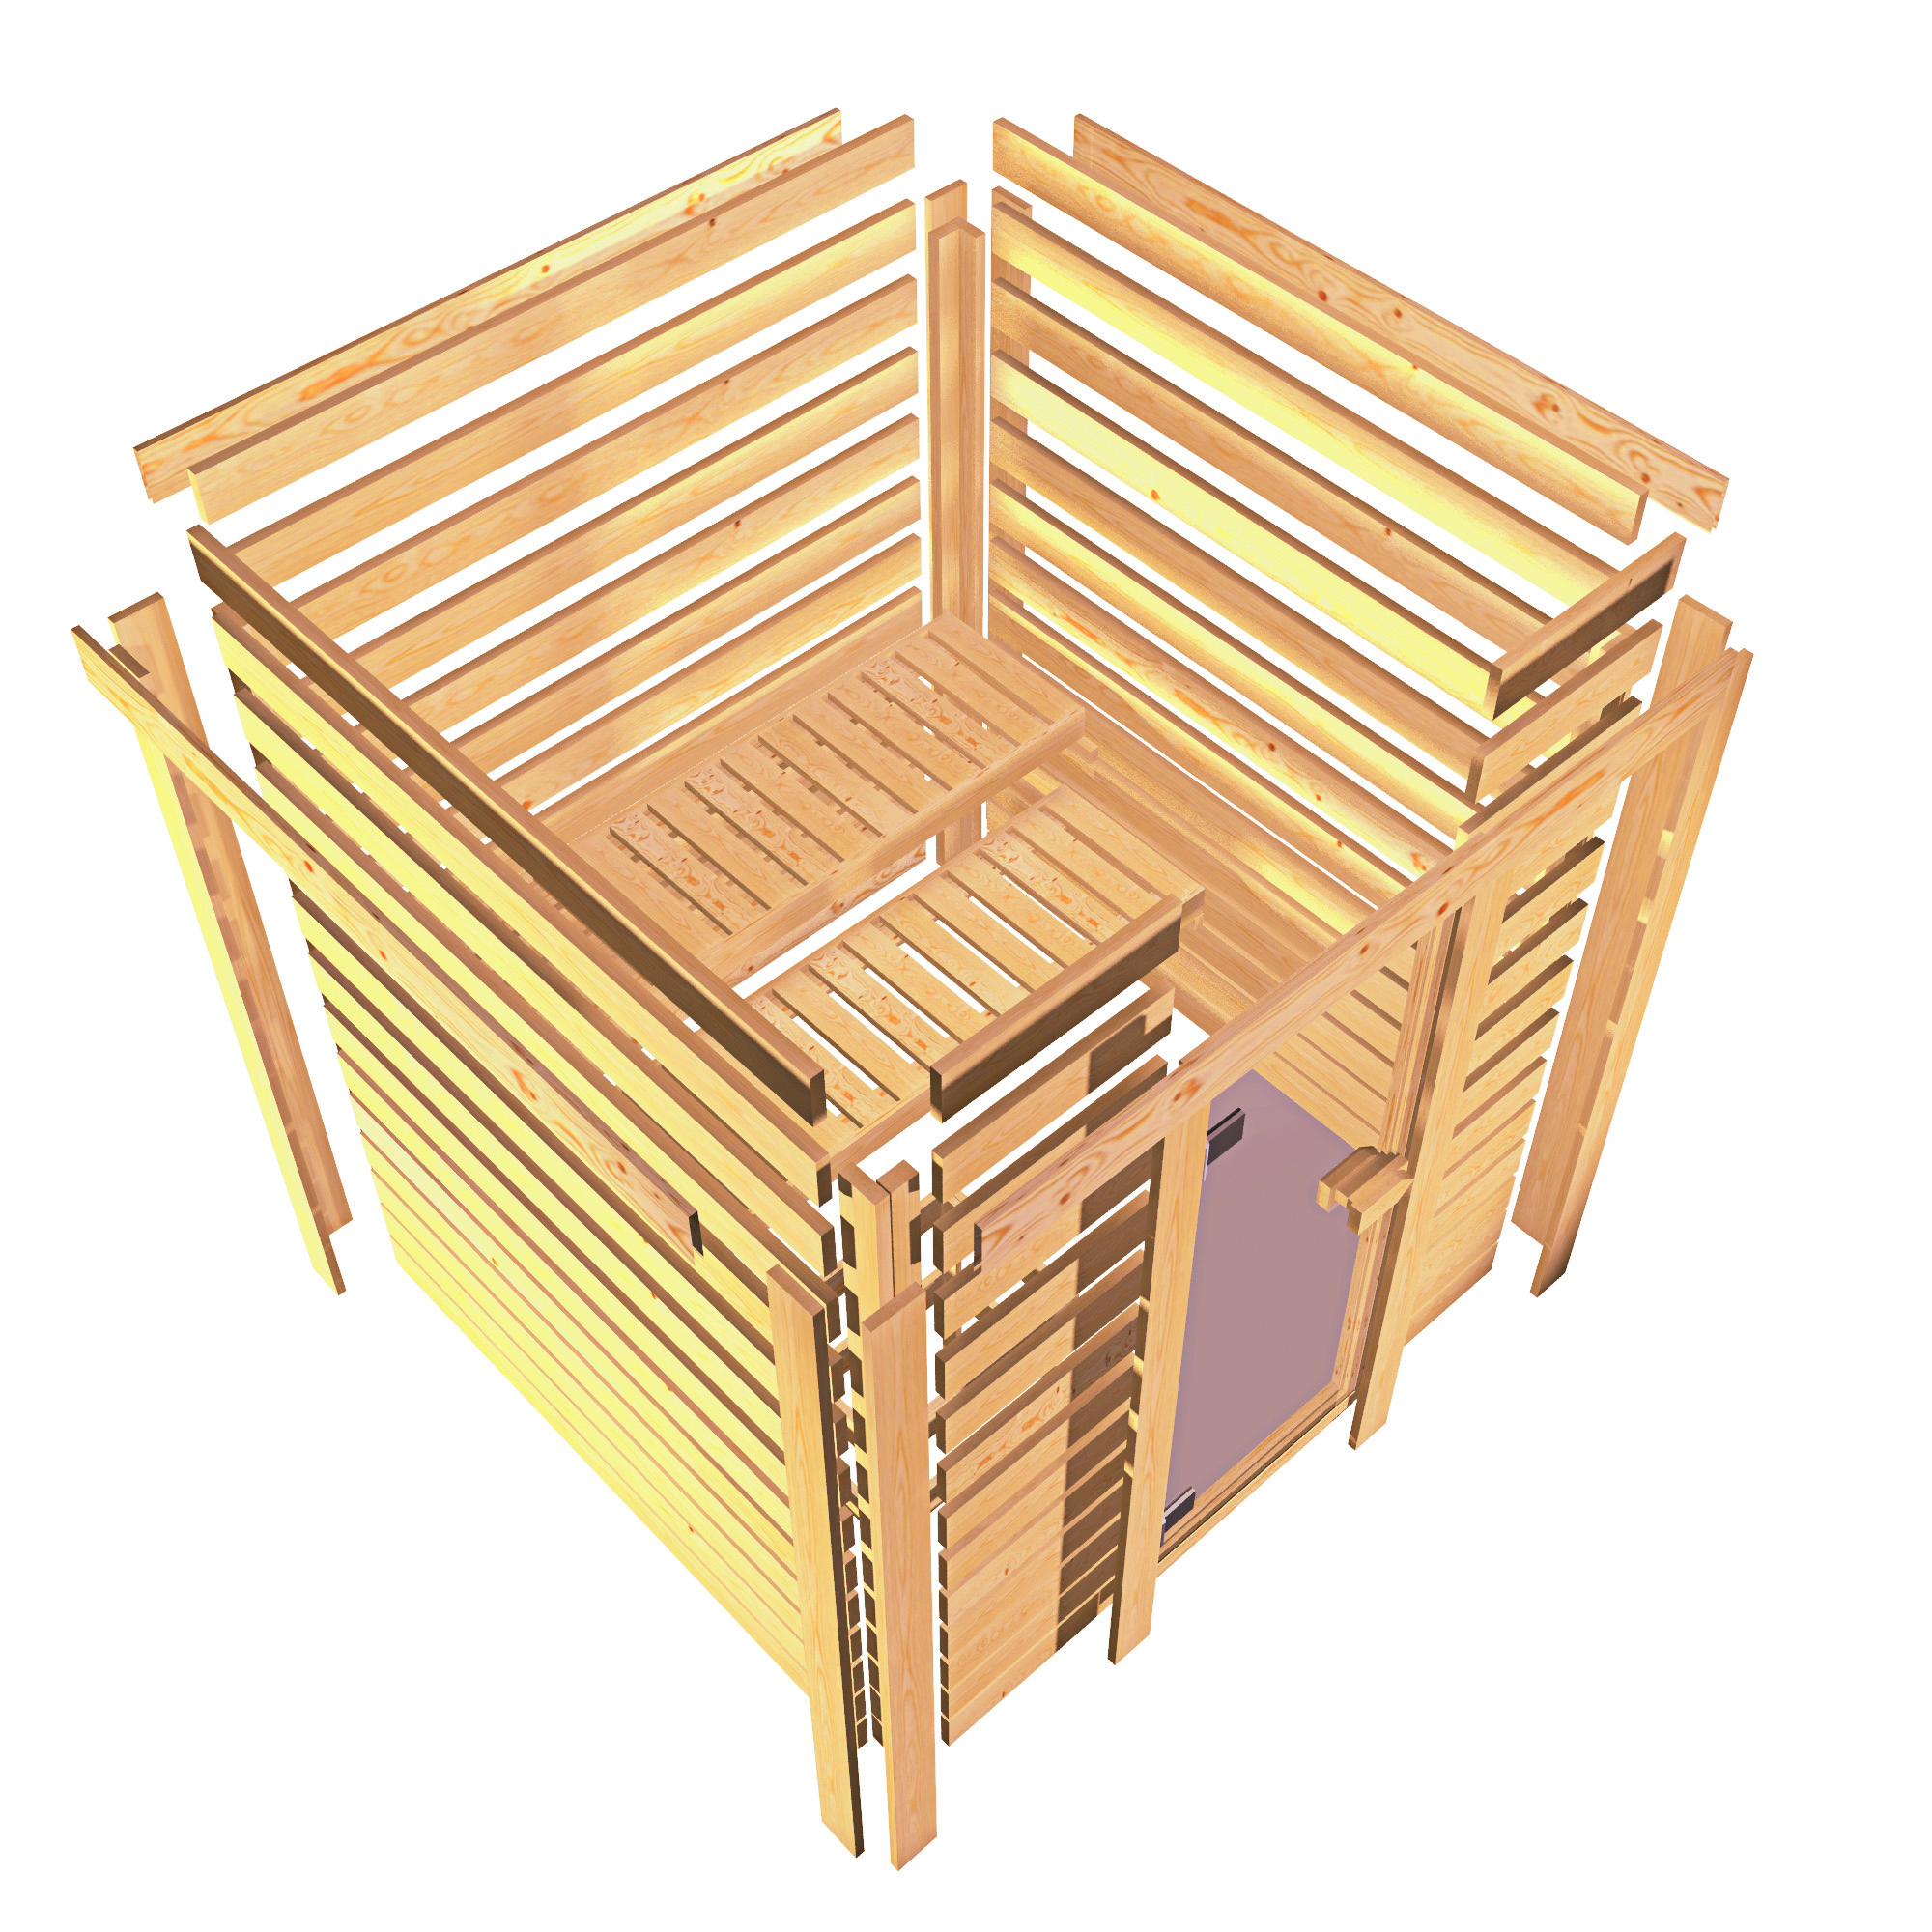 Energiespar-Sauna Cosmin GREEN POWER - 196x170 cm, 38 mm Massivholzsauna | ohne Ofen